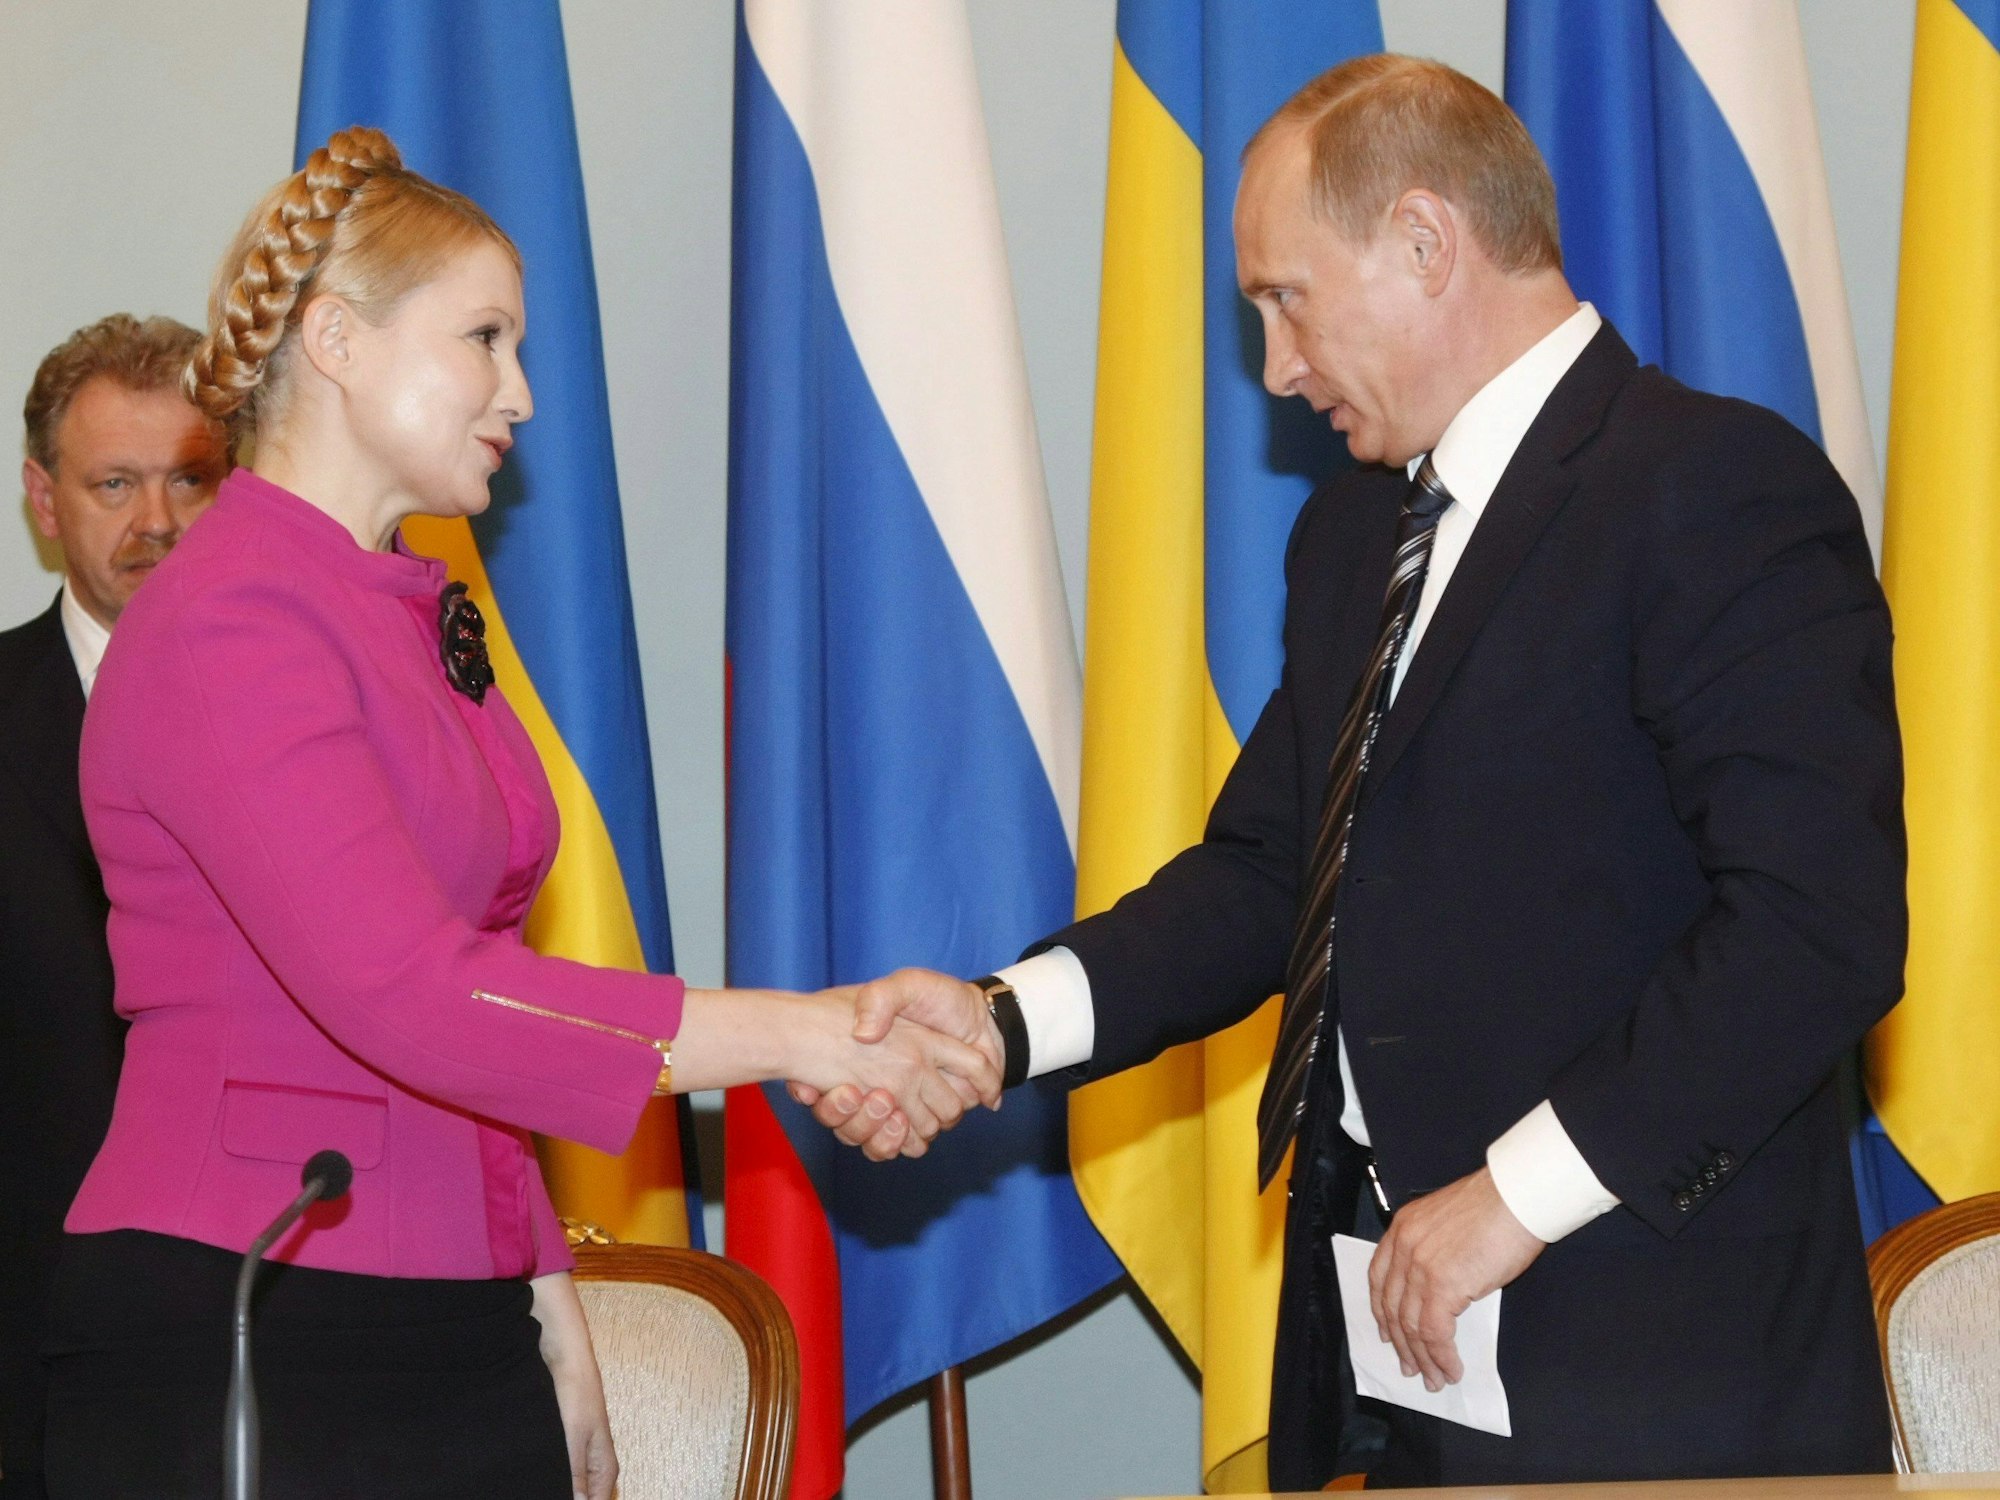 Der russische Ministerpräsident Wladimir Putin (r) reicht seiner ukrainischen Amtskollegin Julia Timoschenko die Hand.